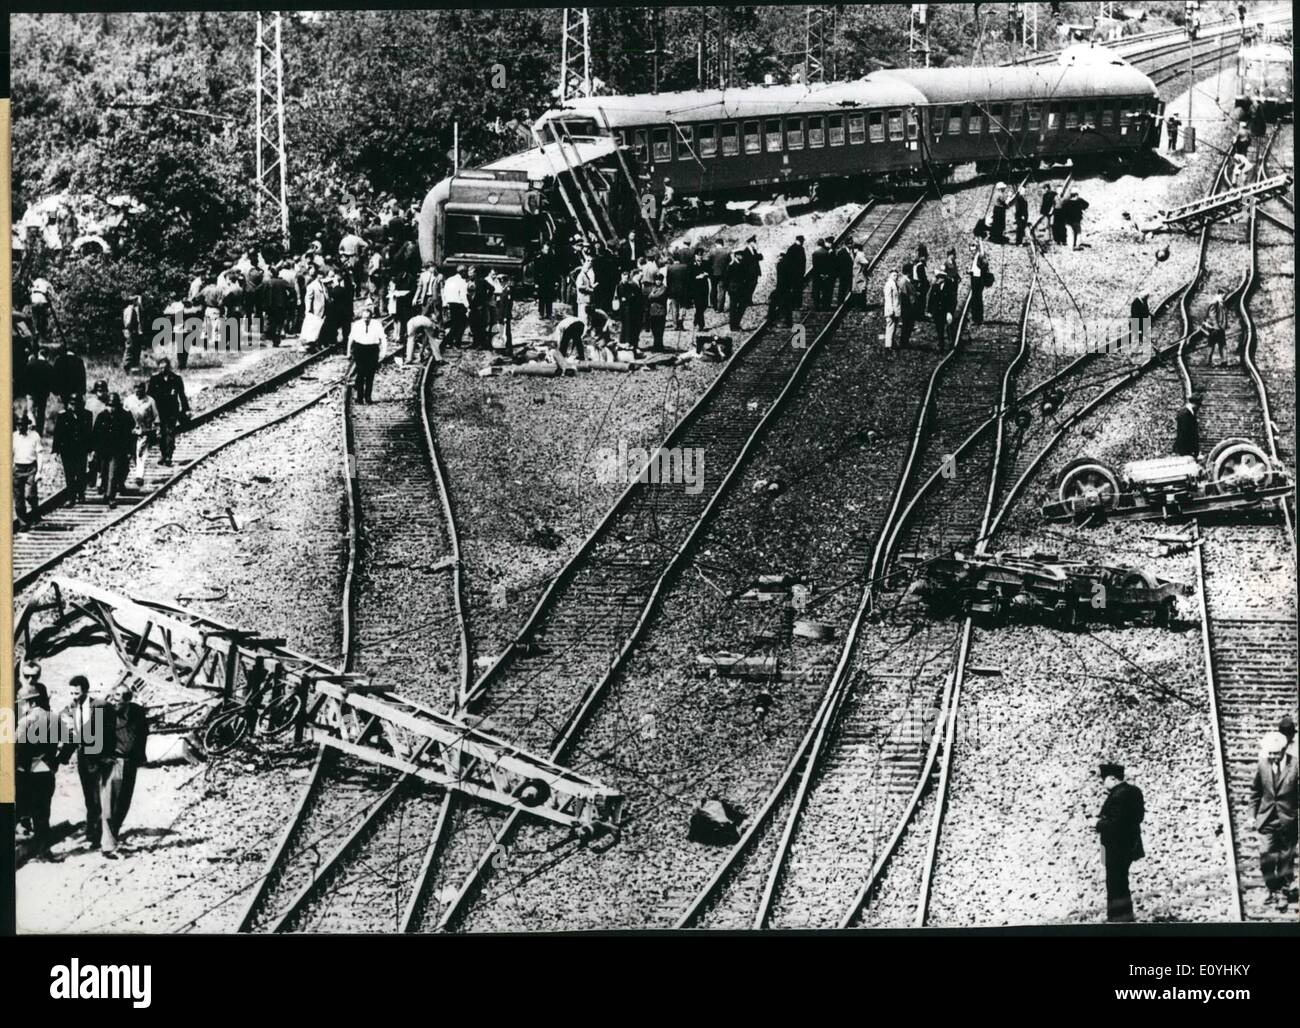 6. Juni 1970 - fünf Tote bei einem schweren Zugunglück: einem schweren Zugunglück in der Nähe von Celle/Niedersachsen verursacht mindestens fünf Tote und 20 schwer verwundet Passagiere auf 5.6.70. Der Unfall geschah, als plötzlich, dass die letzten acht Wagen der Express Zug Stuttgart-Hamburg auf high-Speed entsprungen aus den Schienen und teilweise aufgehoben. Es ist noch nicht bekannt, was die Ursache des Unfalls war, aber der Dirigent sagte er Luxationen der Spuren bemerkt hatte, kurz bevor der Unfall passierte. Foto zeigt, dass der Ort der Katastrophe ist ein Bild der Verwüstung Stockfoto